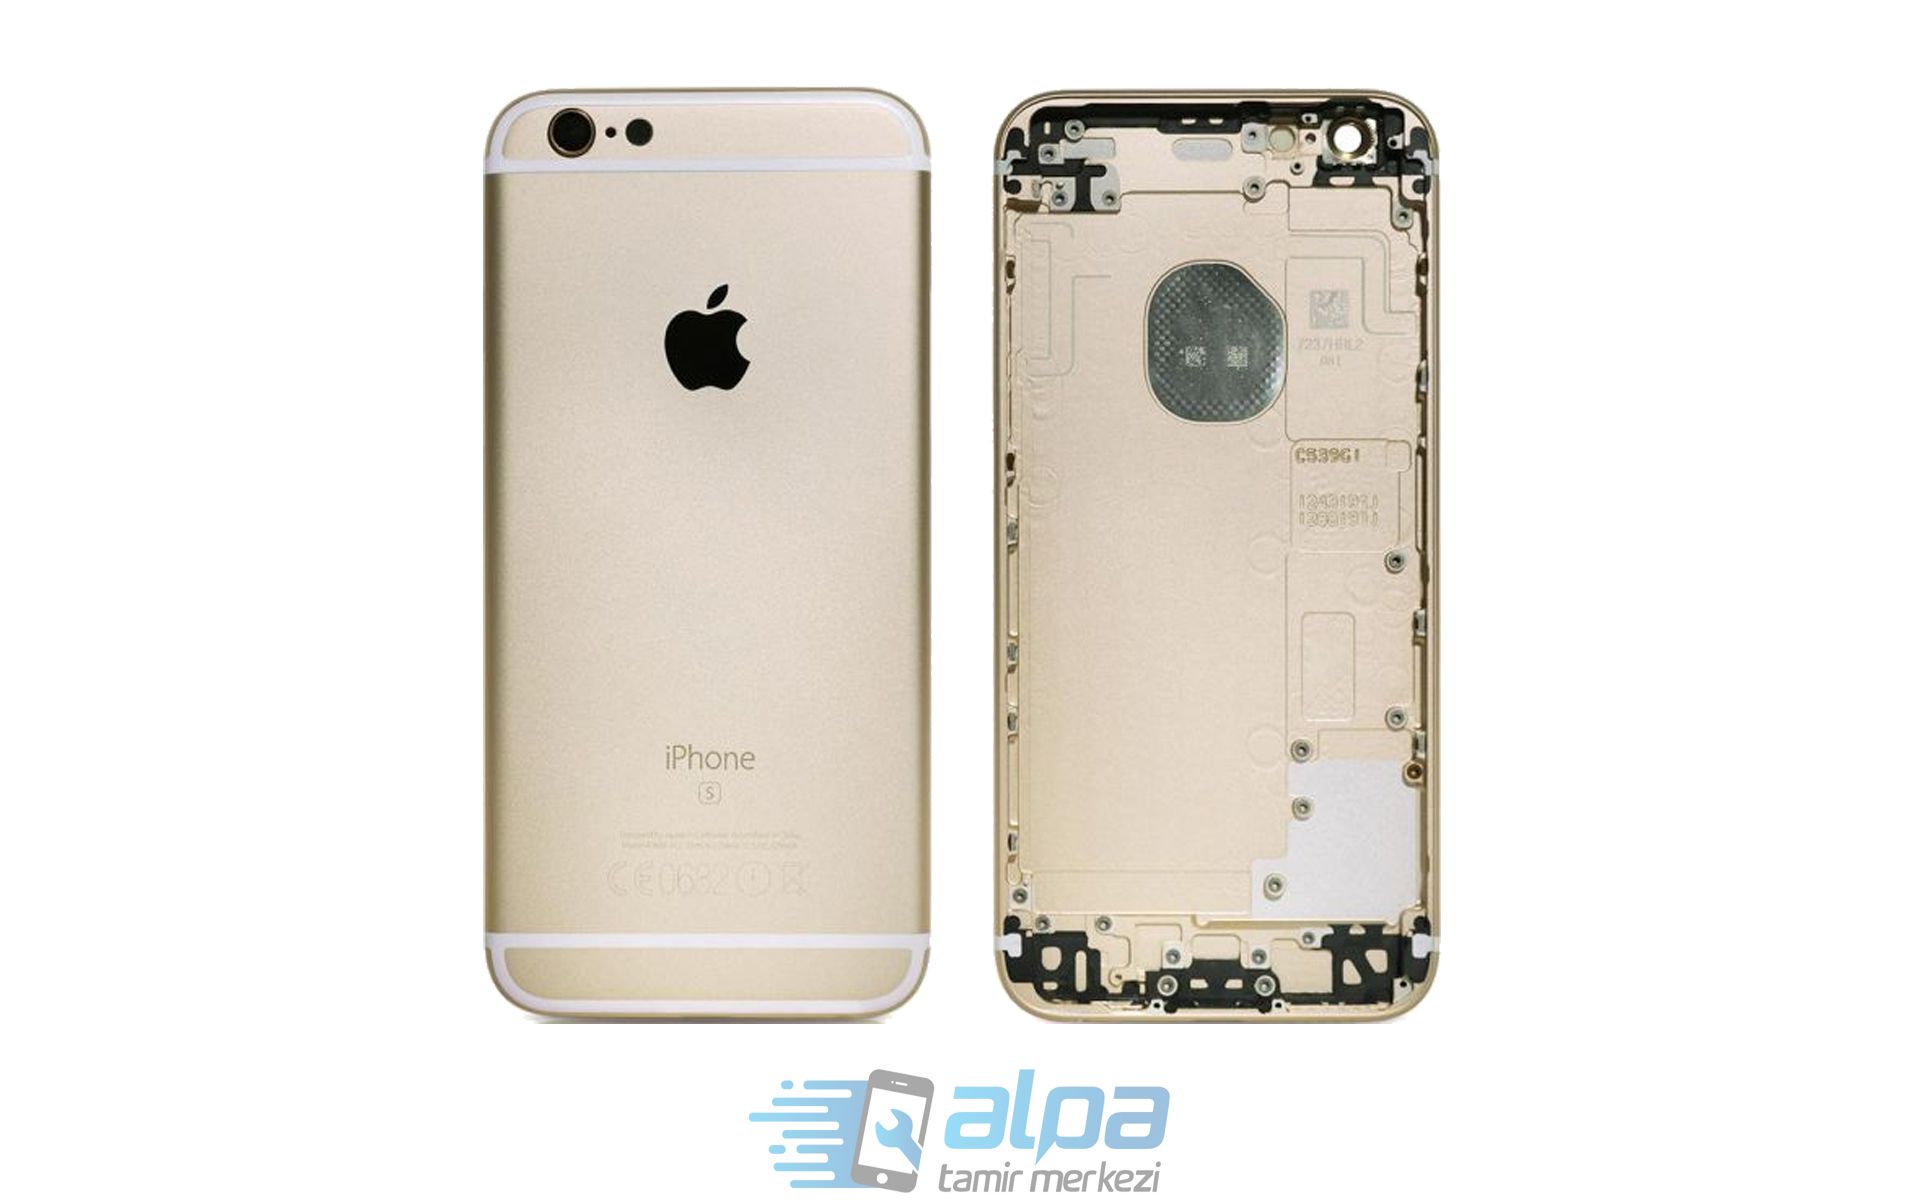 iPhone 6s Kasa Değişimi Fiyatı 799 TL